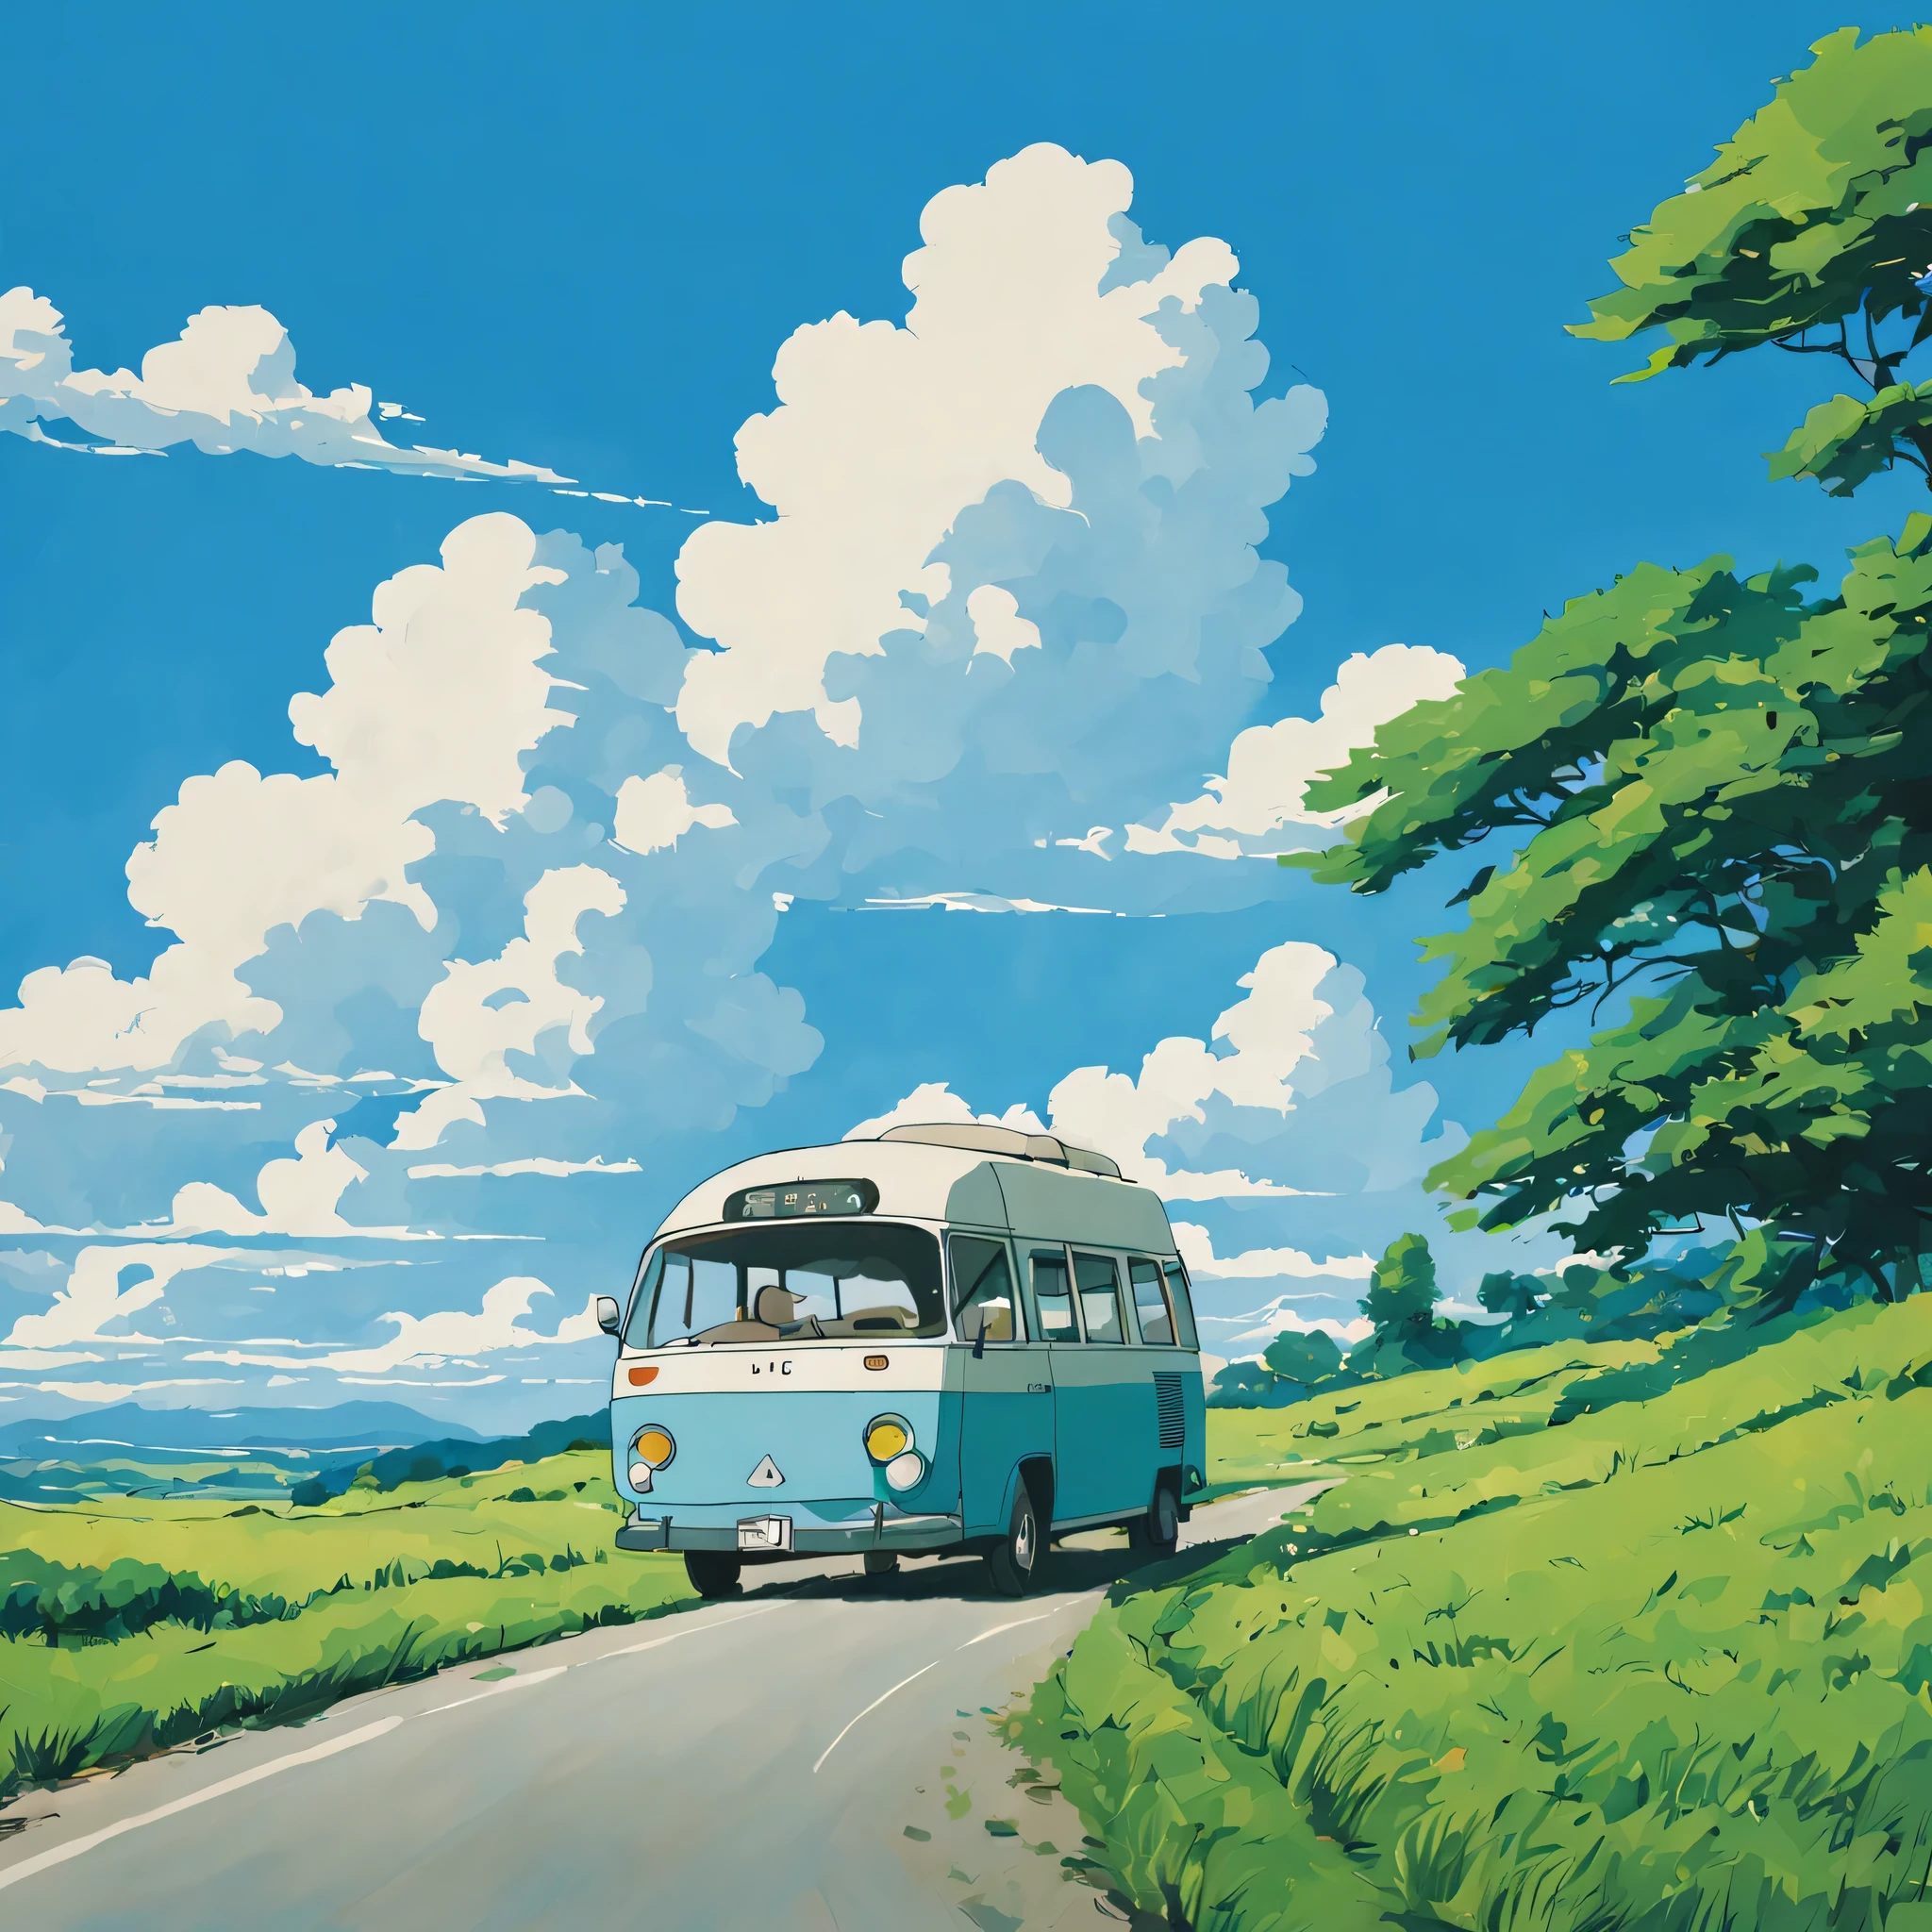 (ミニマリズム:1.4), 道路にミニバスが停まっている, ジブリスタジオアート, 宮崎, 青い空と白い雲のある牧草地